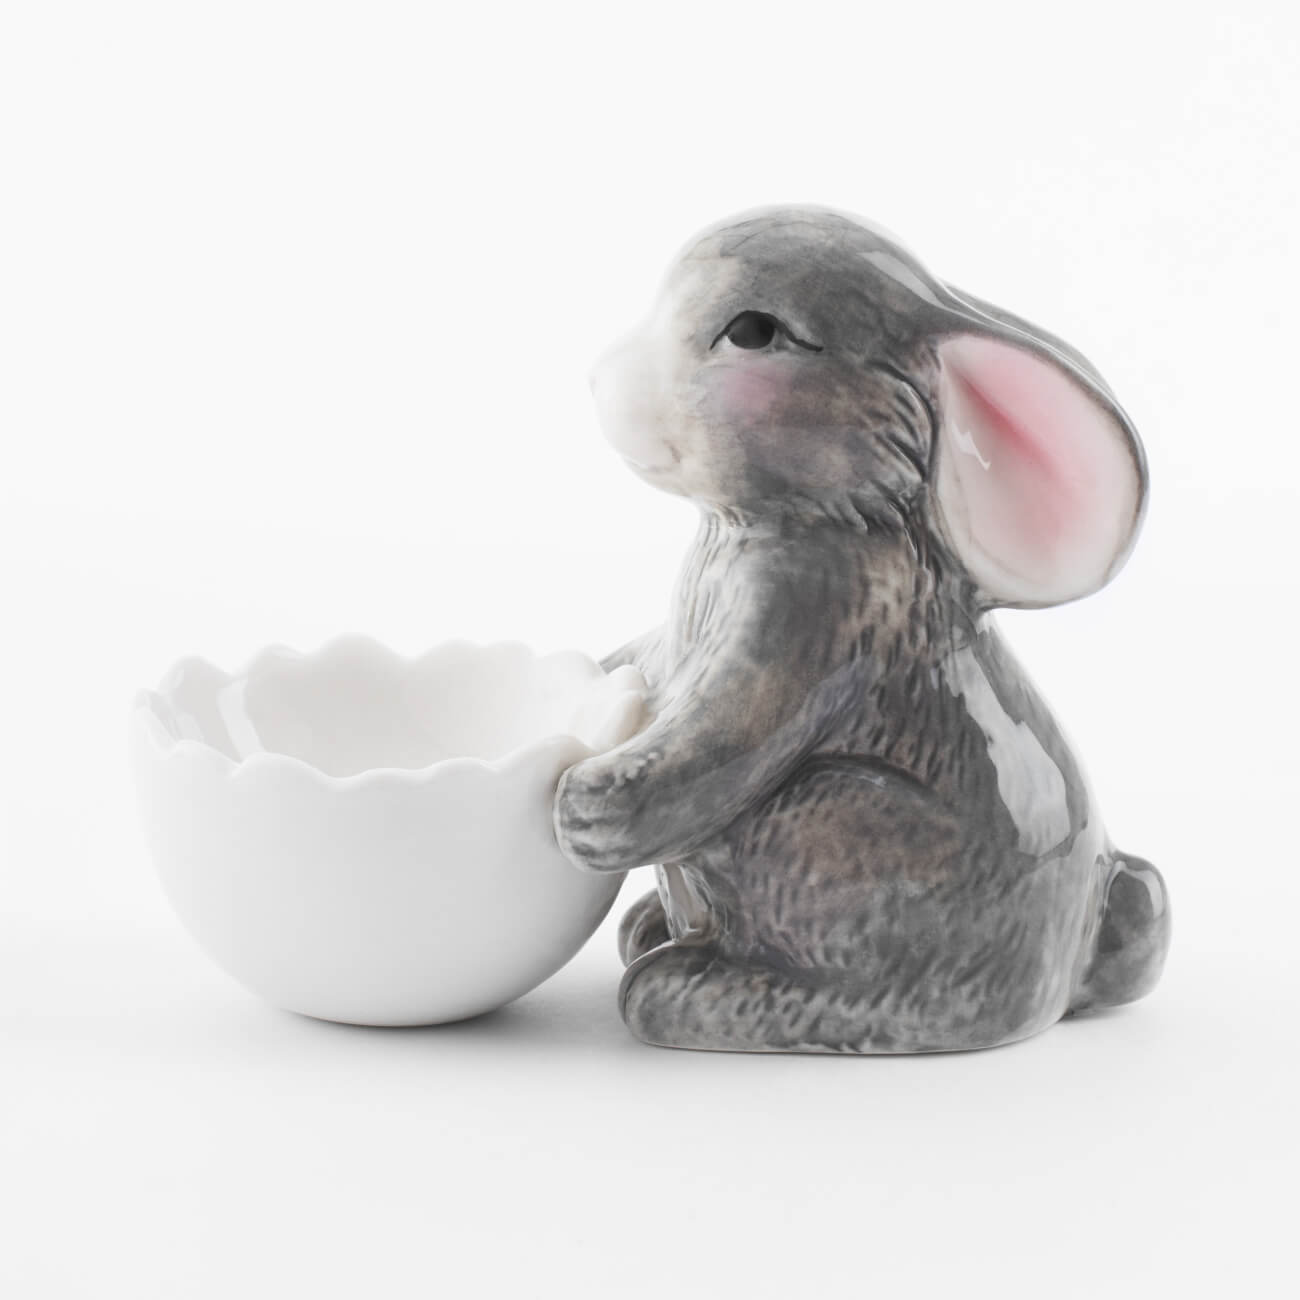 Подставка для яйца, 11 см, фарфор P, бело-серая, Кролик со скорлупой, Pure Easter подставка для яйца 7 см фарфор n белая кролик в ах pure easter